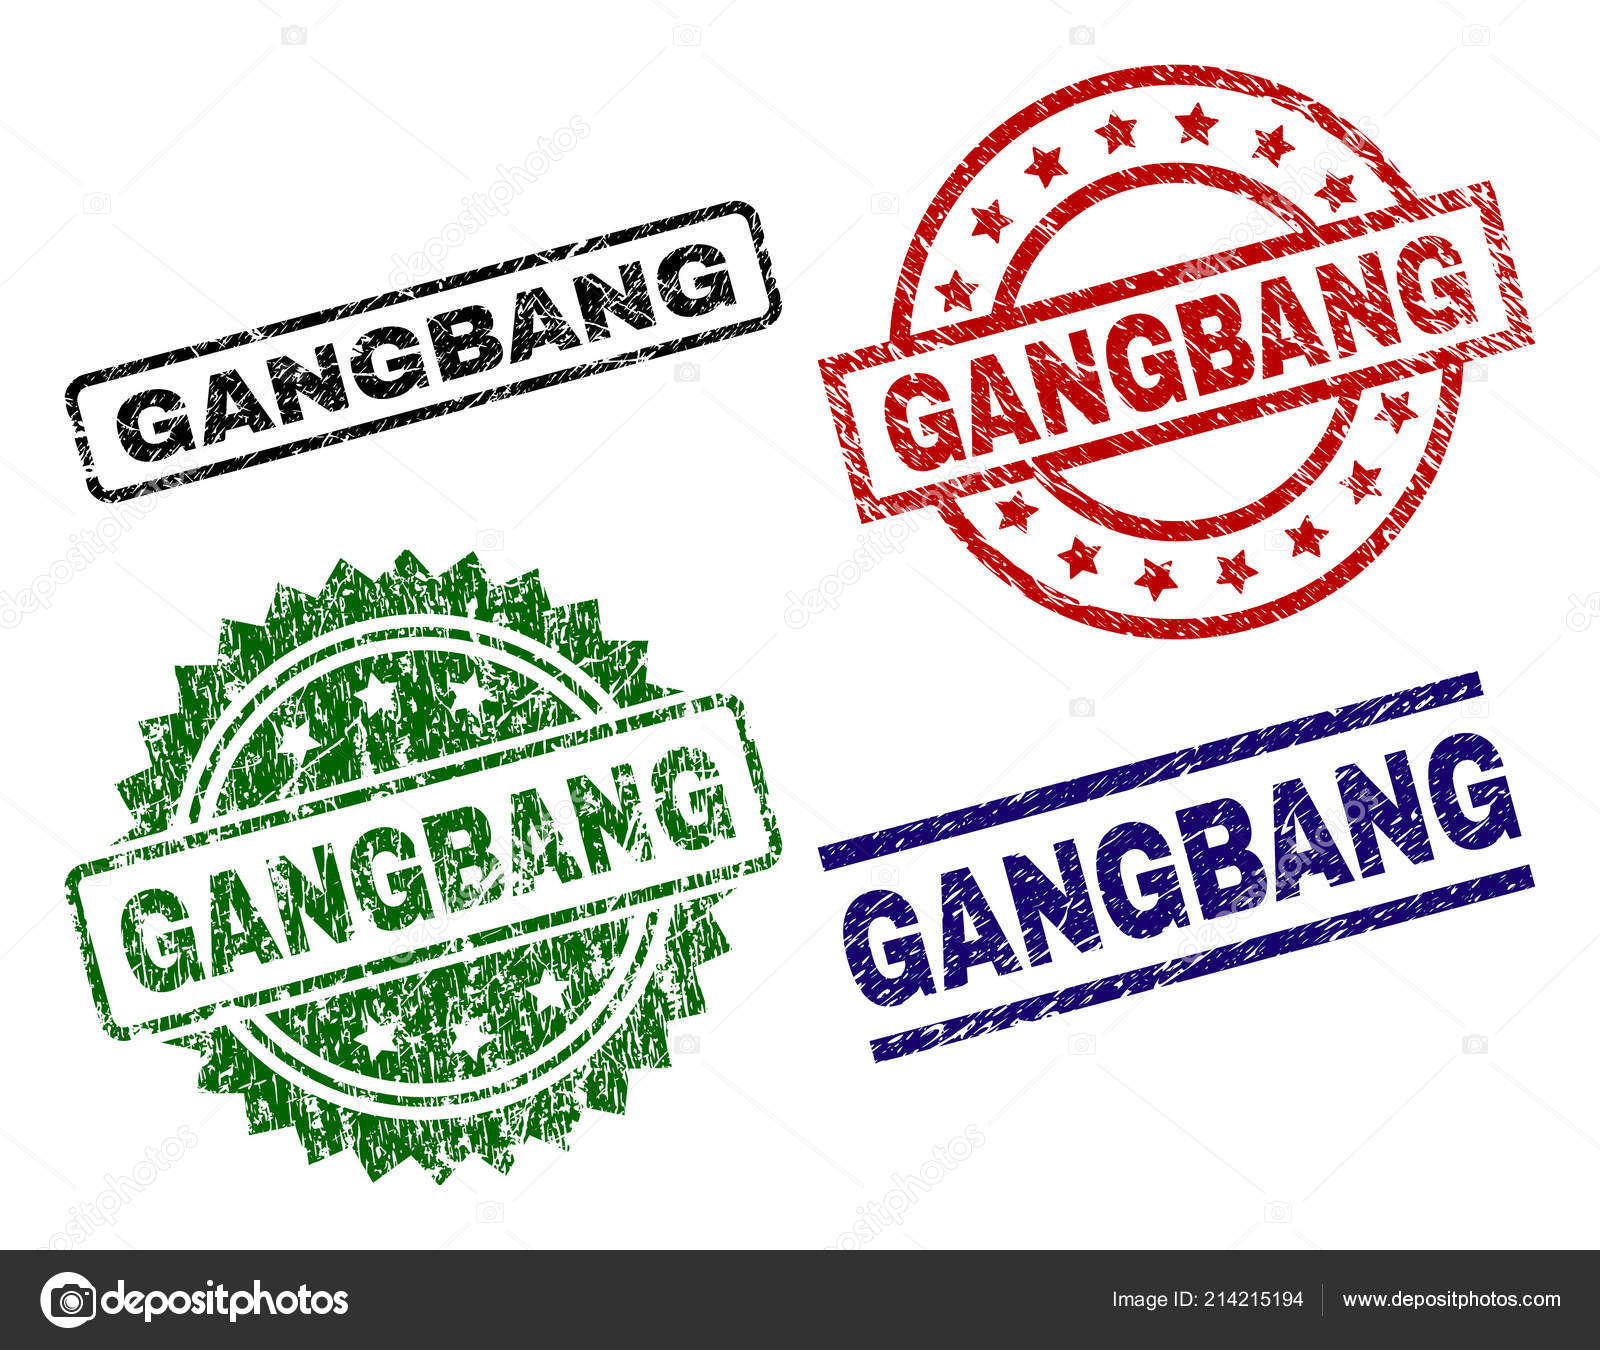 Gang Bang Art